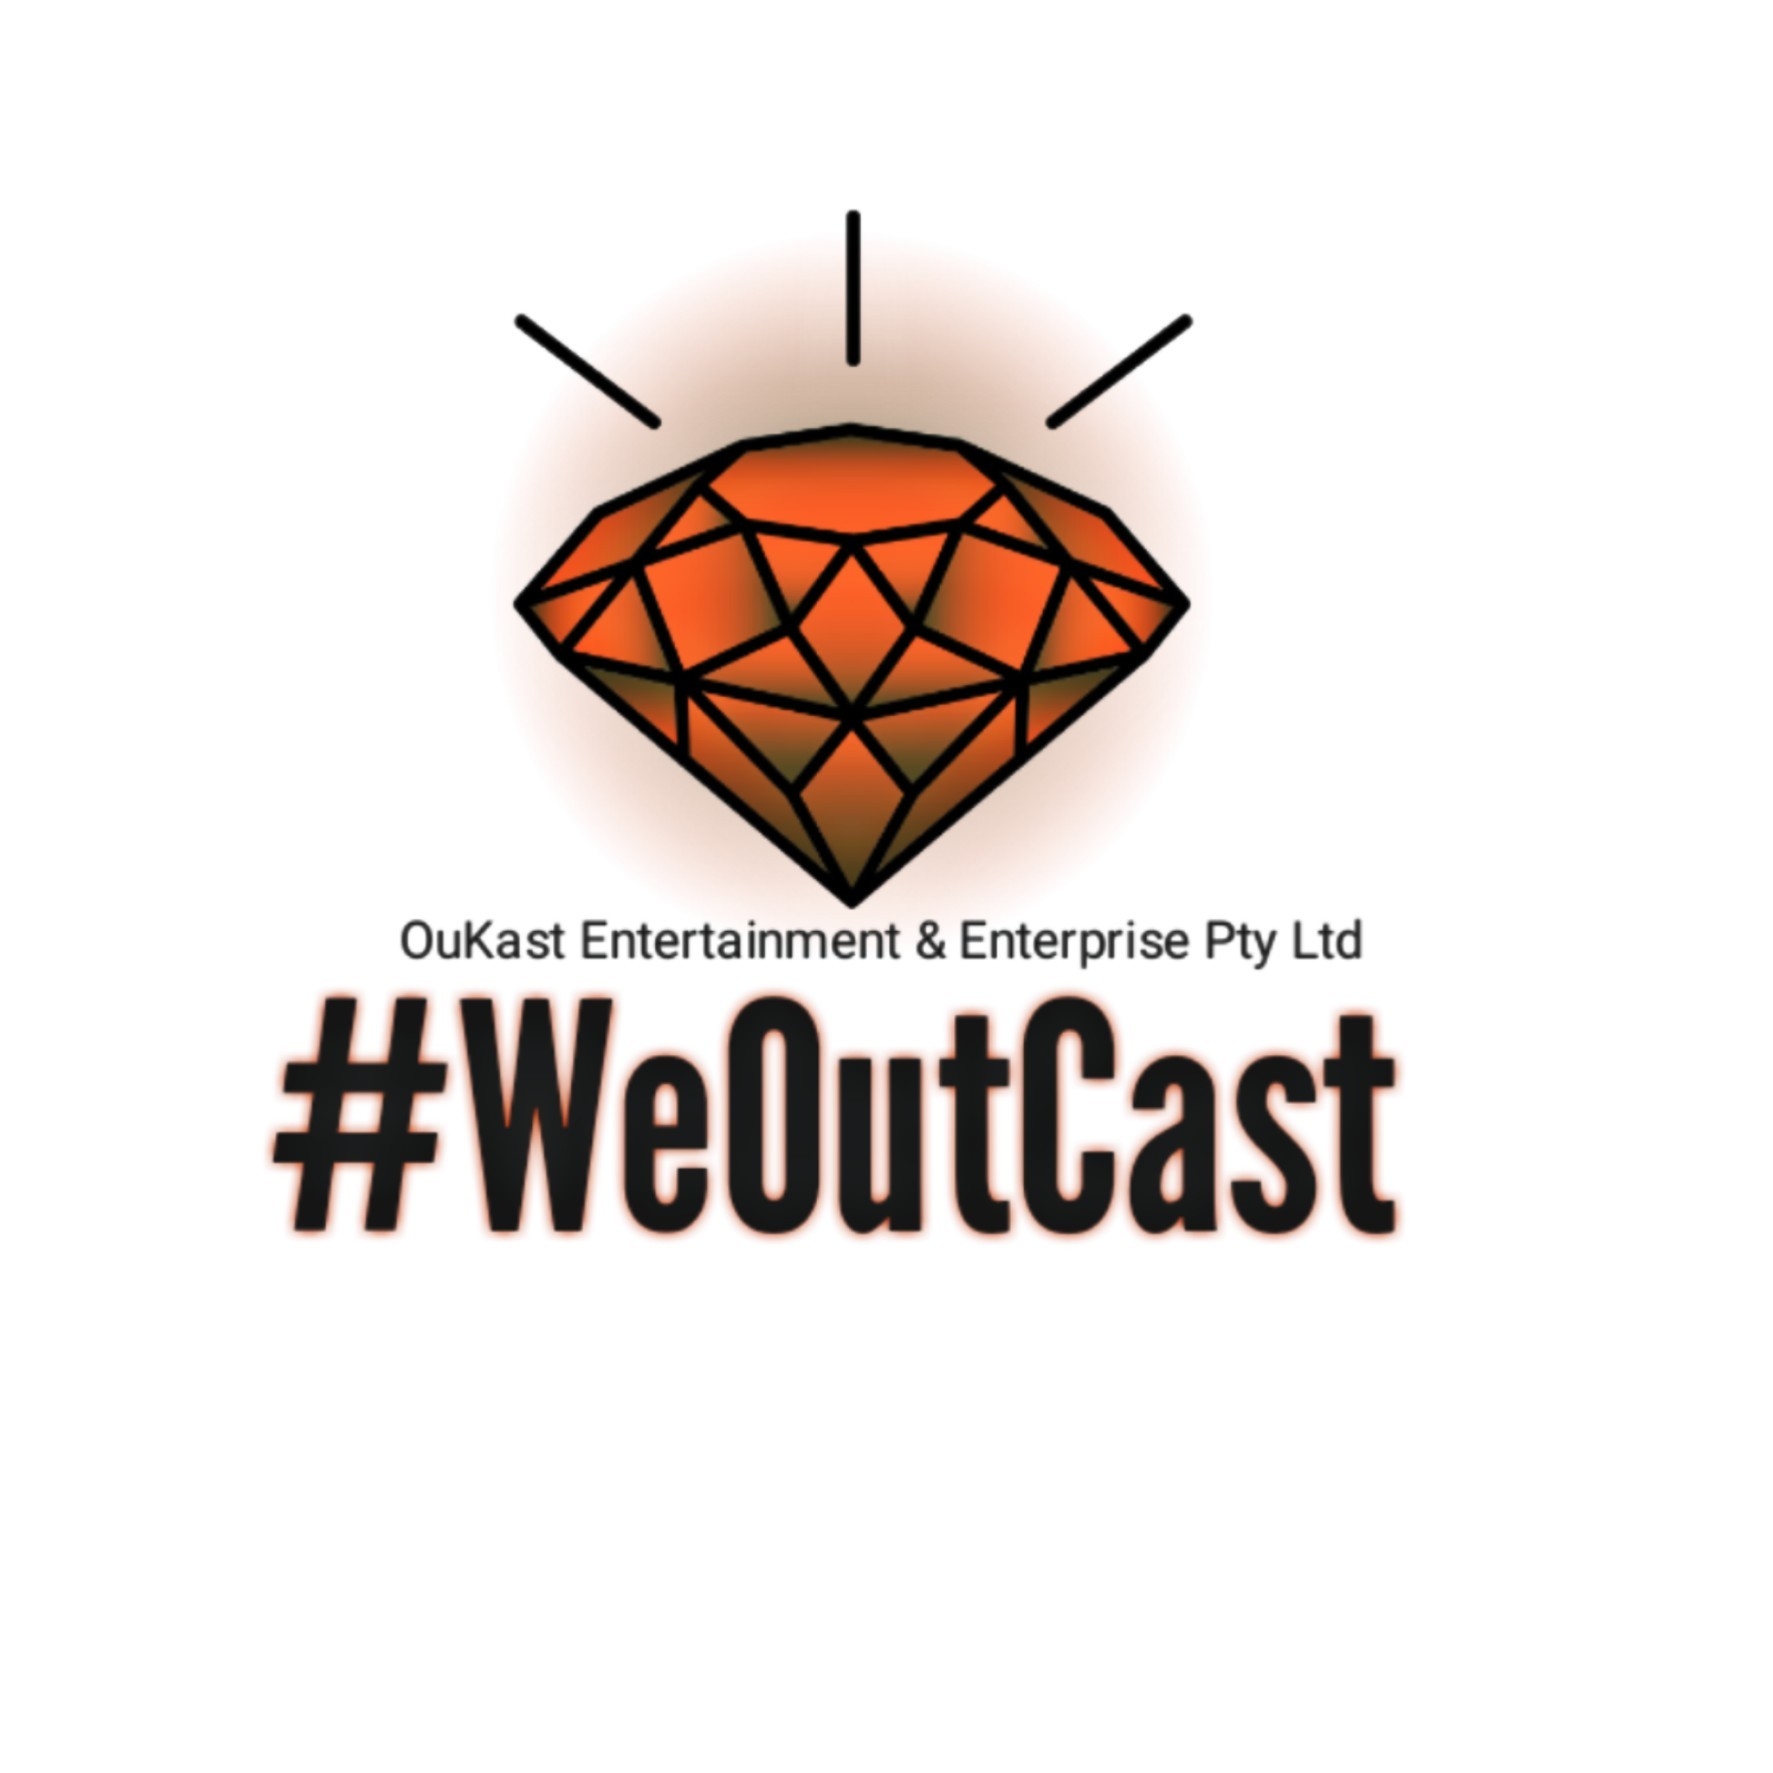 OuKast Entertainment & Enterprise Pty Ltd